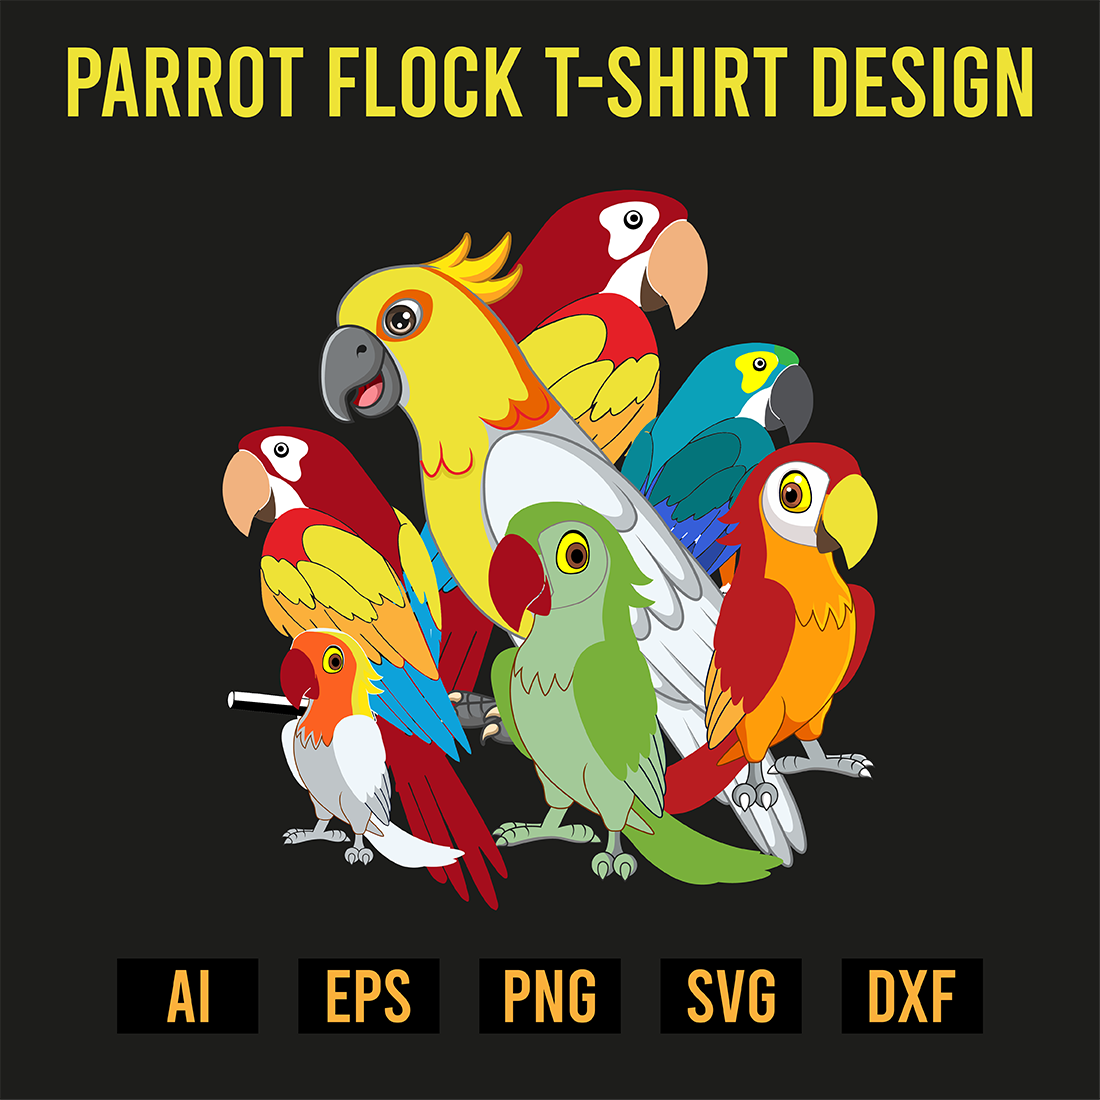 Parrot Flock T-Shirt Design preview image.